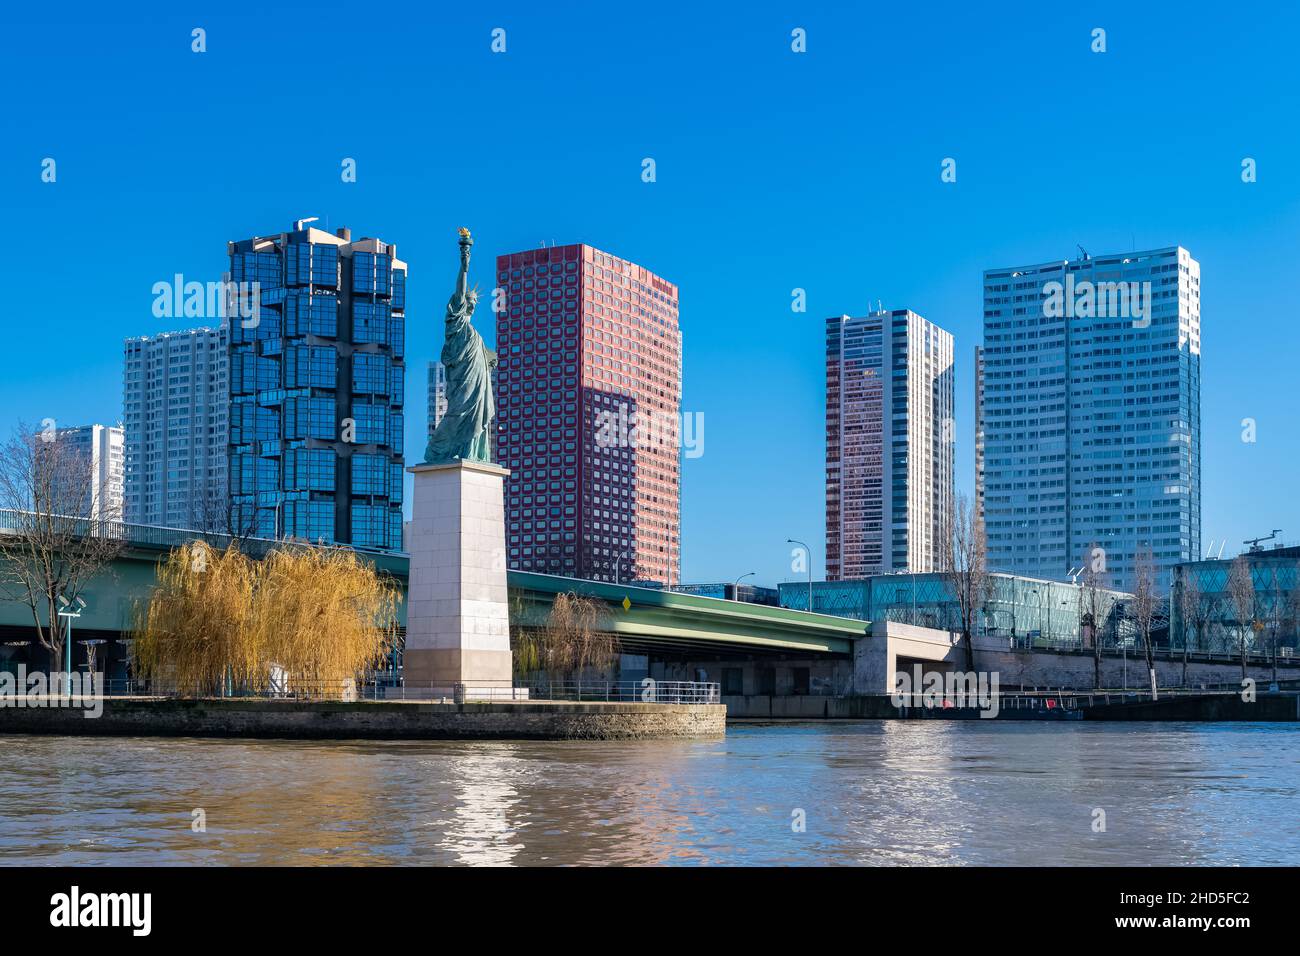 Paris, le pont Grenelle sur la Seine, avec la statue de la liberté Banque D'Images